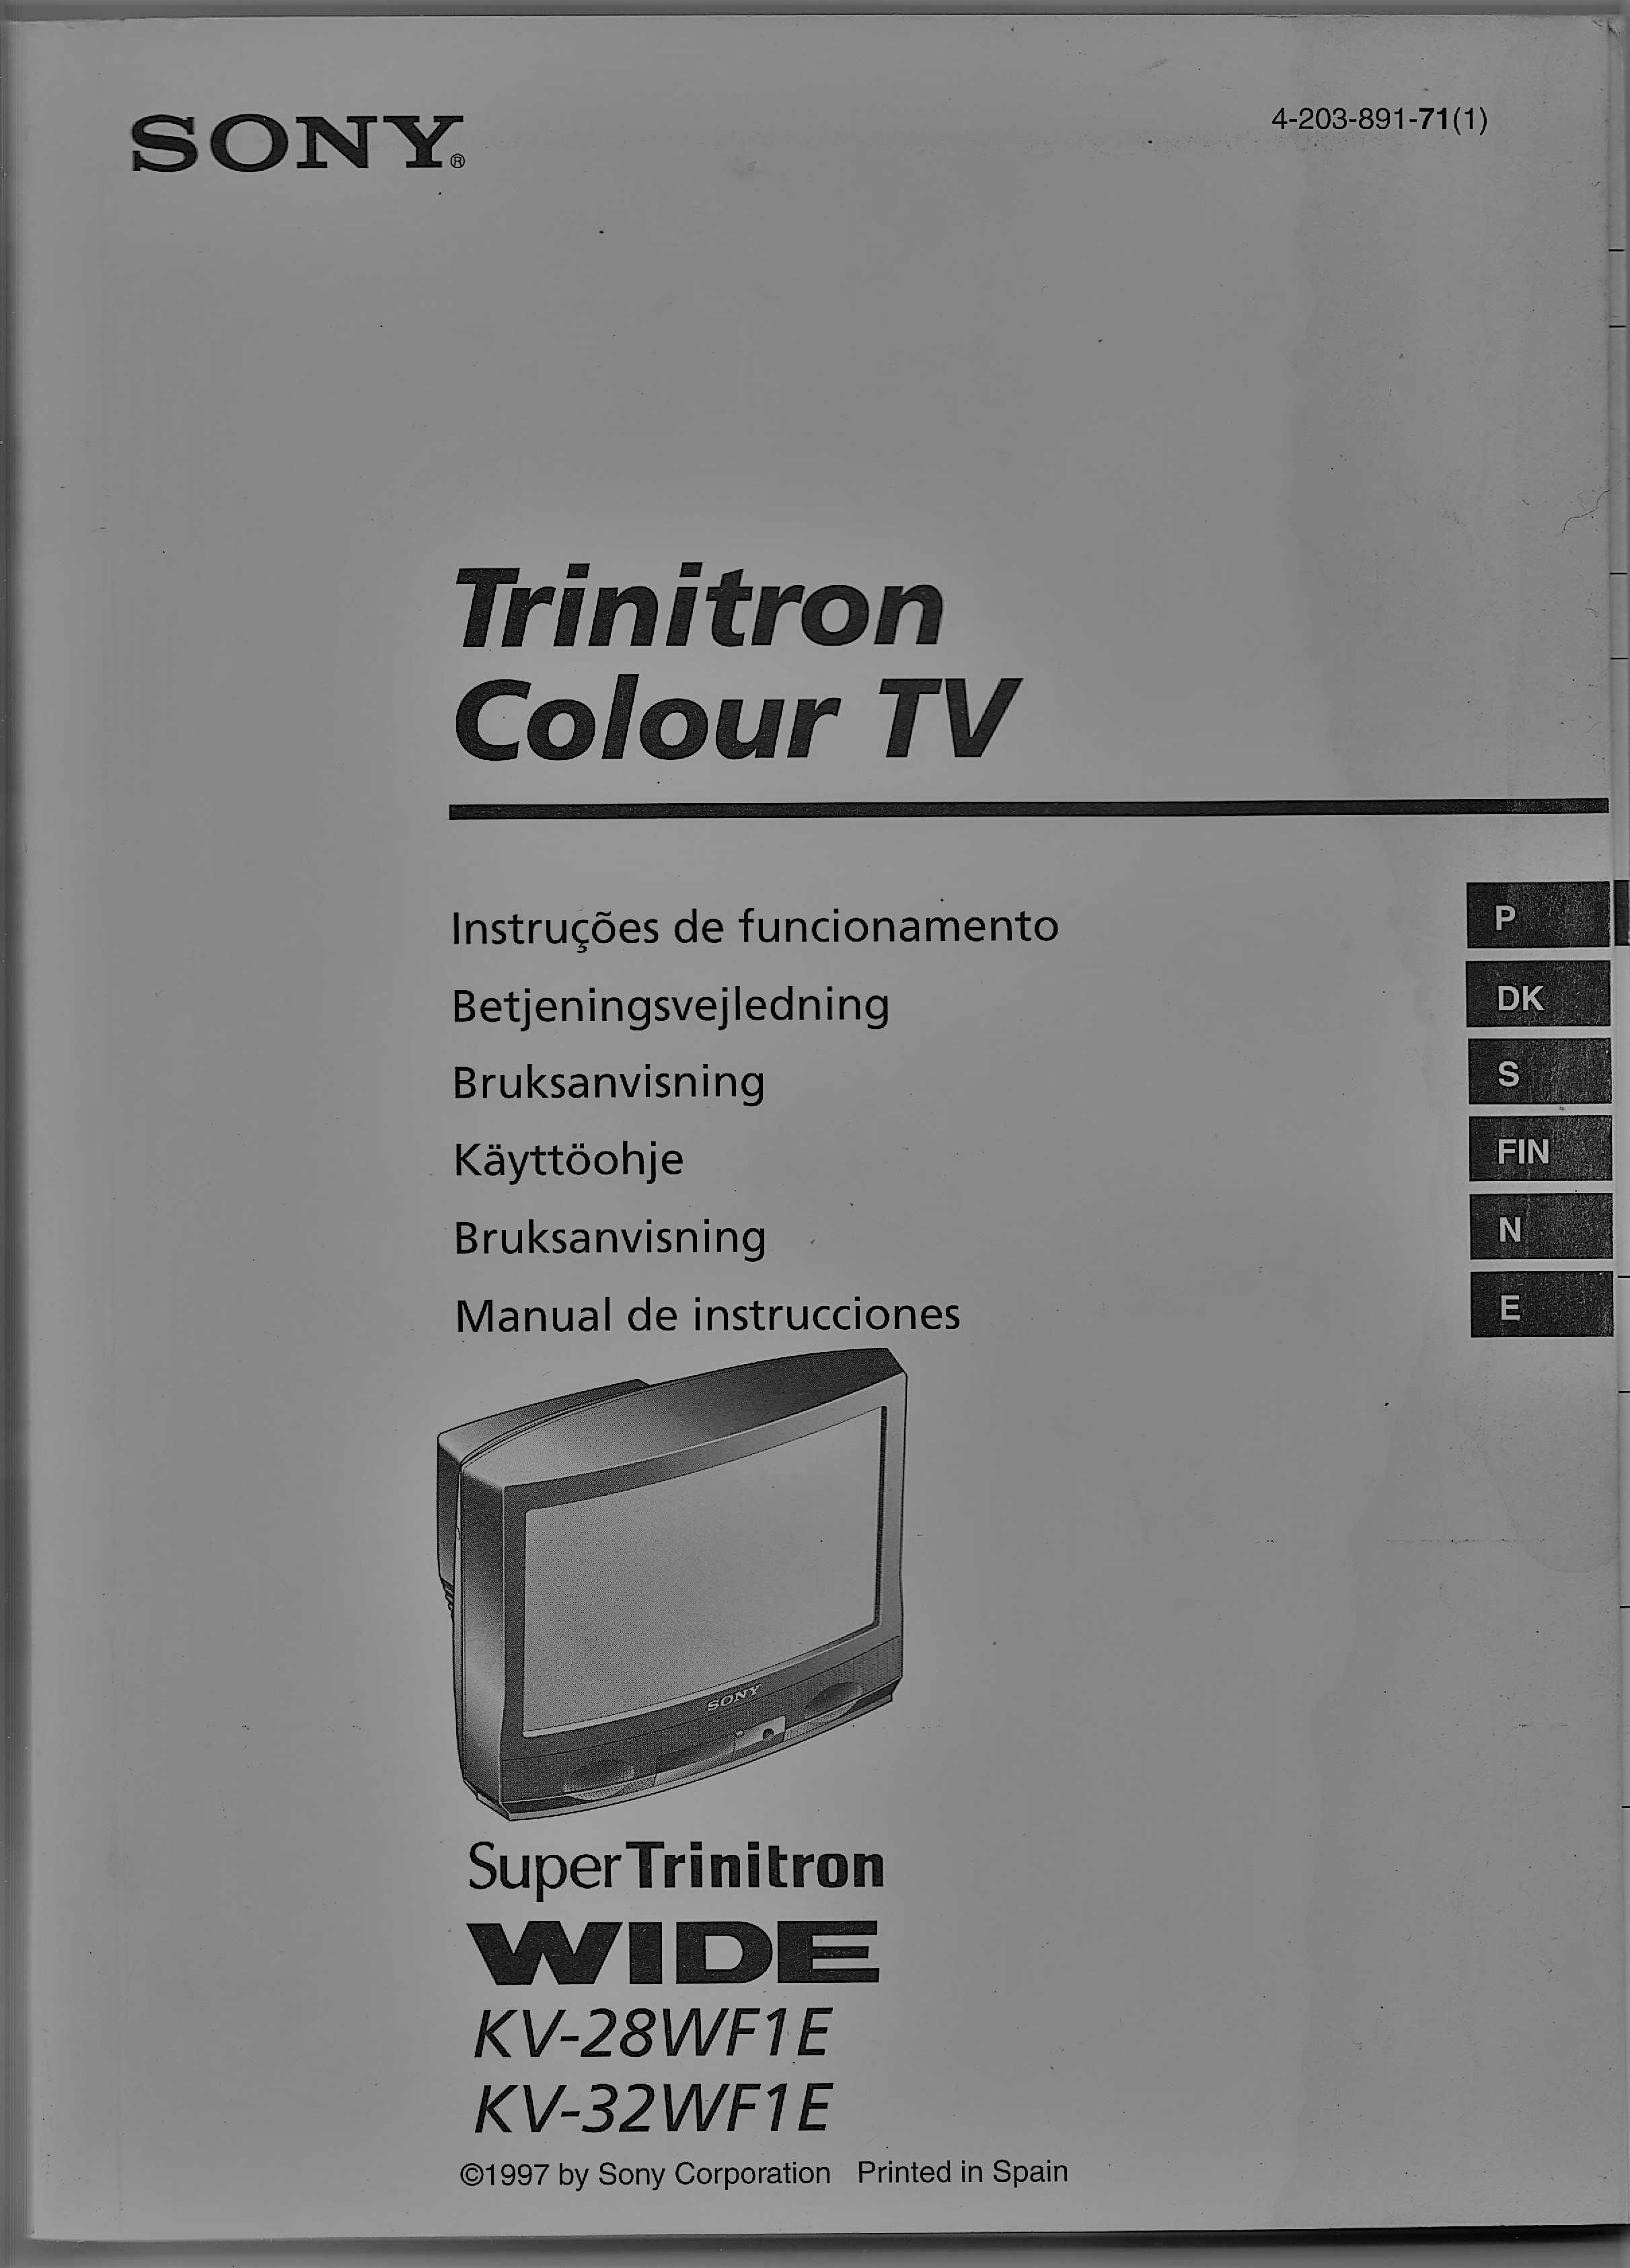 TV Sony Super Trinitron Wide KV-28WF1E - BAIXA DE PREÇO